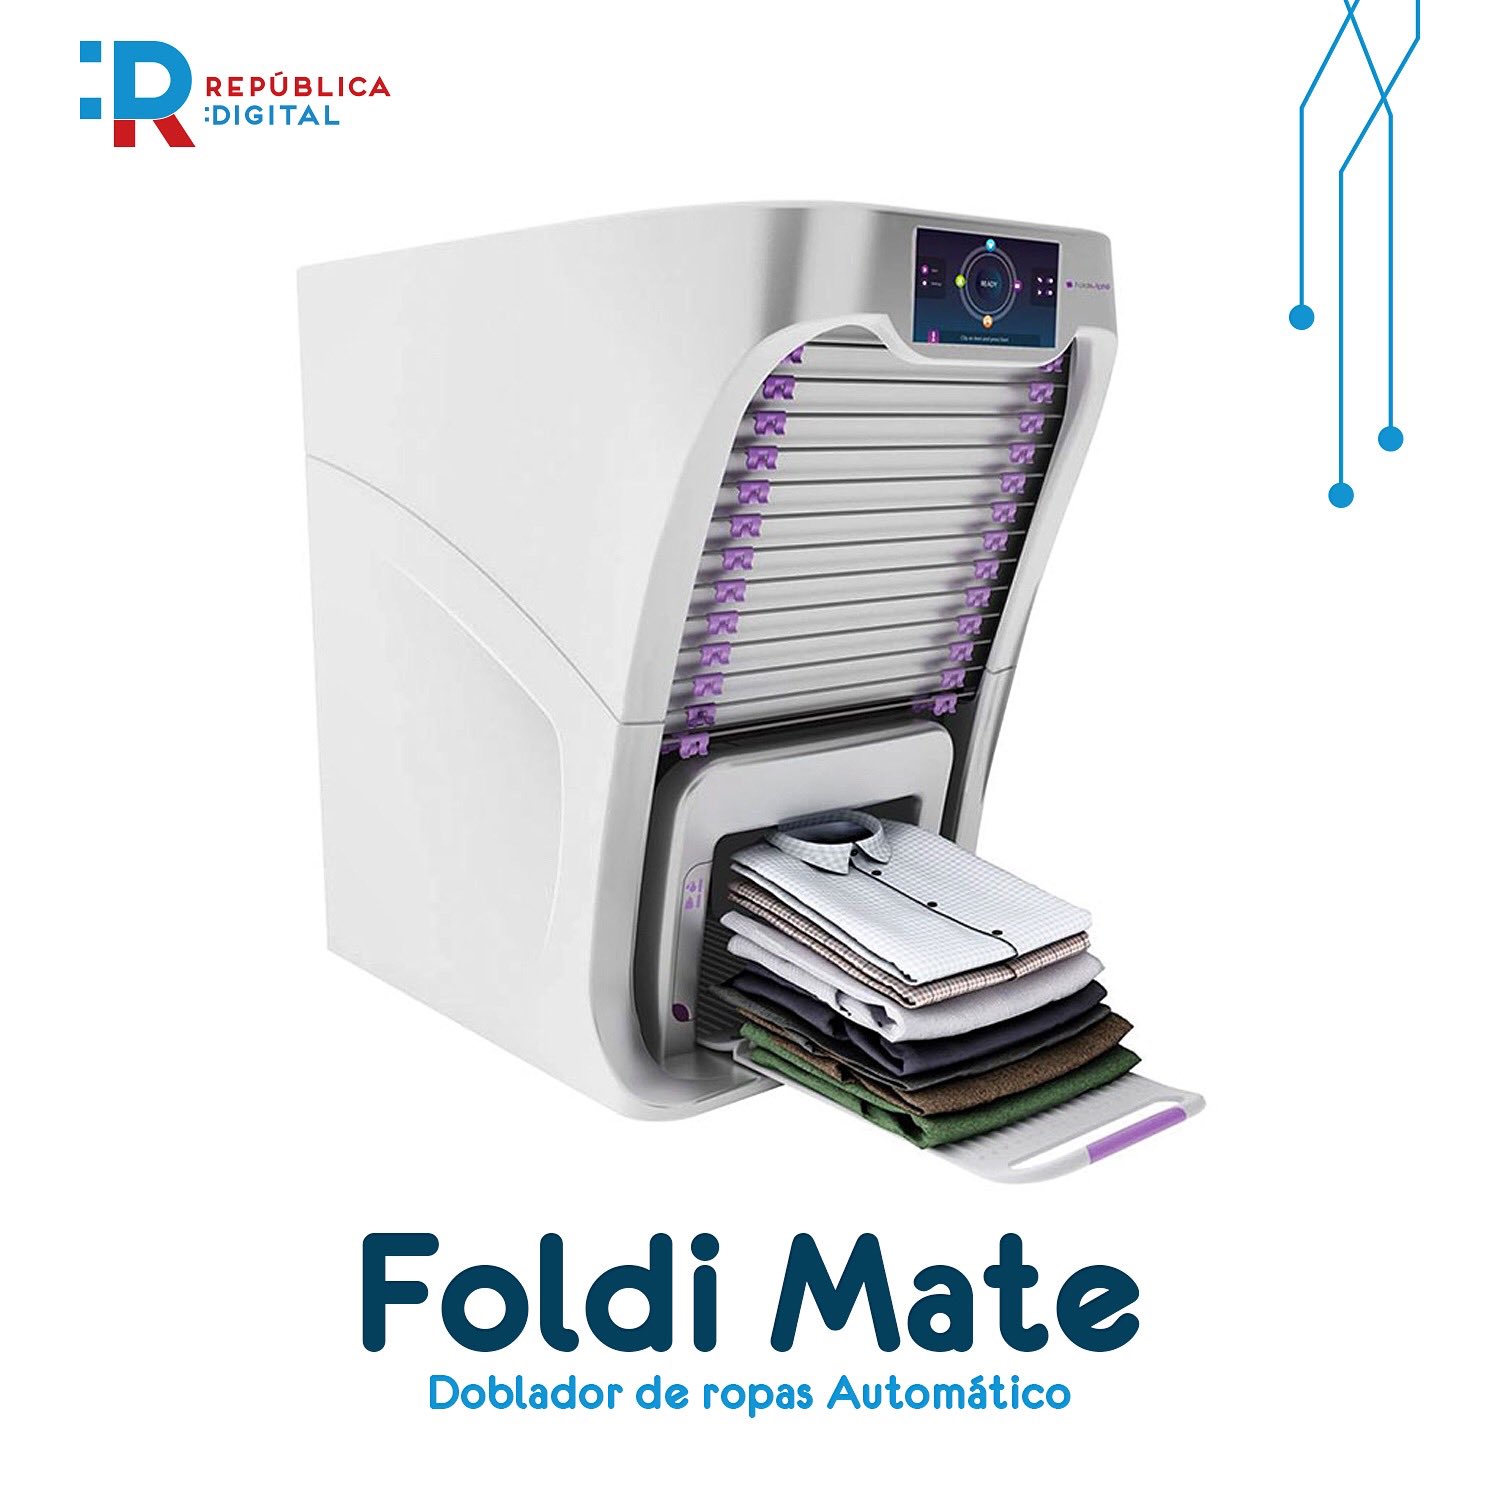 Solitario orden sal República Digital on Twitter: "¿Sabías de un robot que dobla la ropa por  ti? #FoldiMate, presentada en el último Consumer Electronics Show en Las  Vegas, es una máquina que dobla la ropa